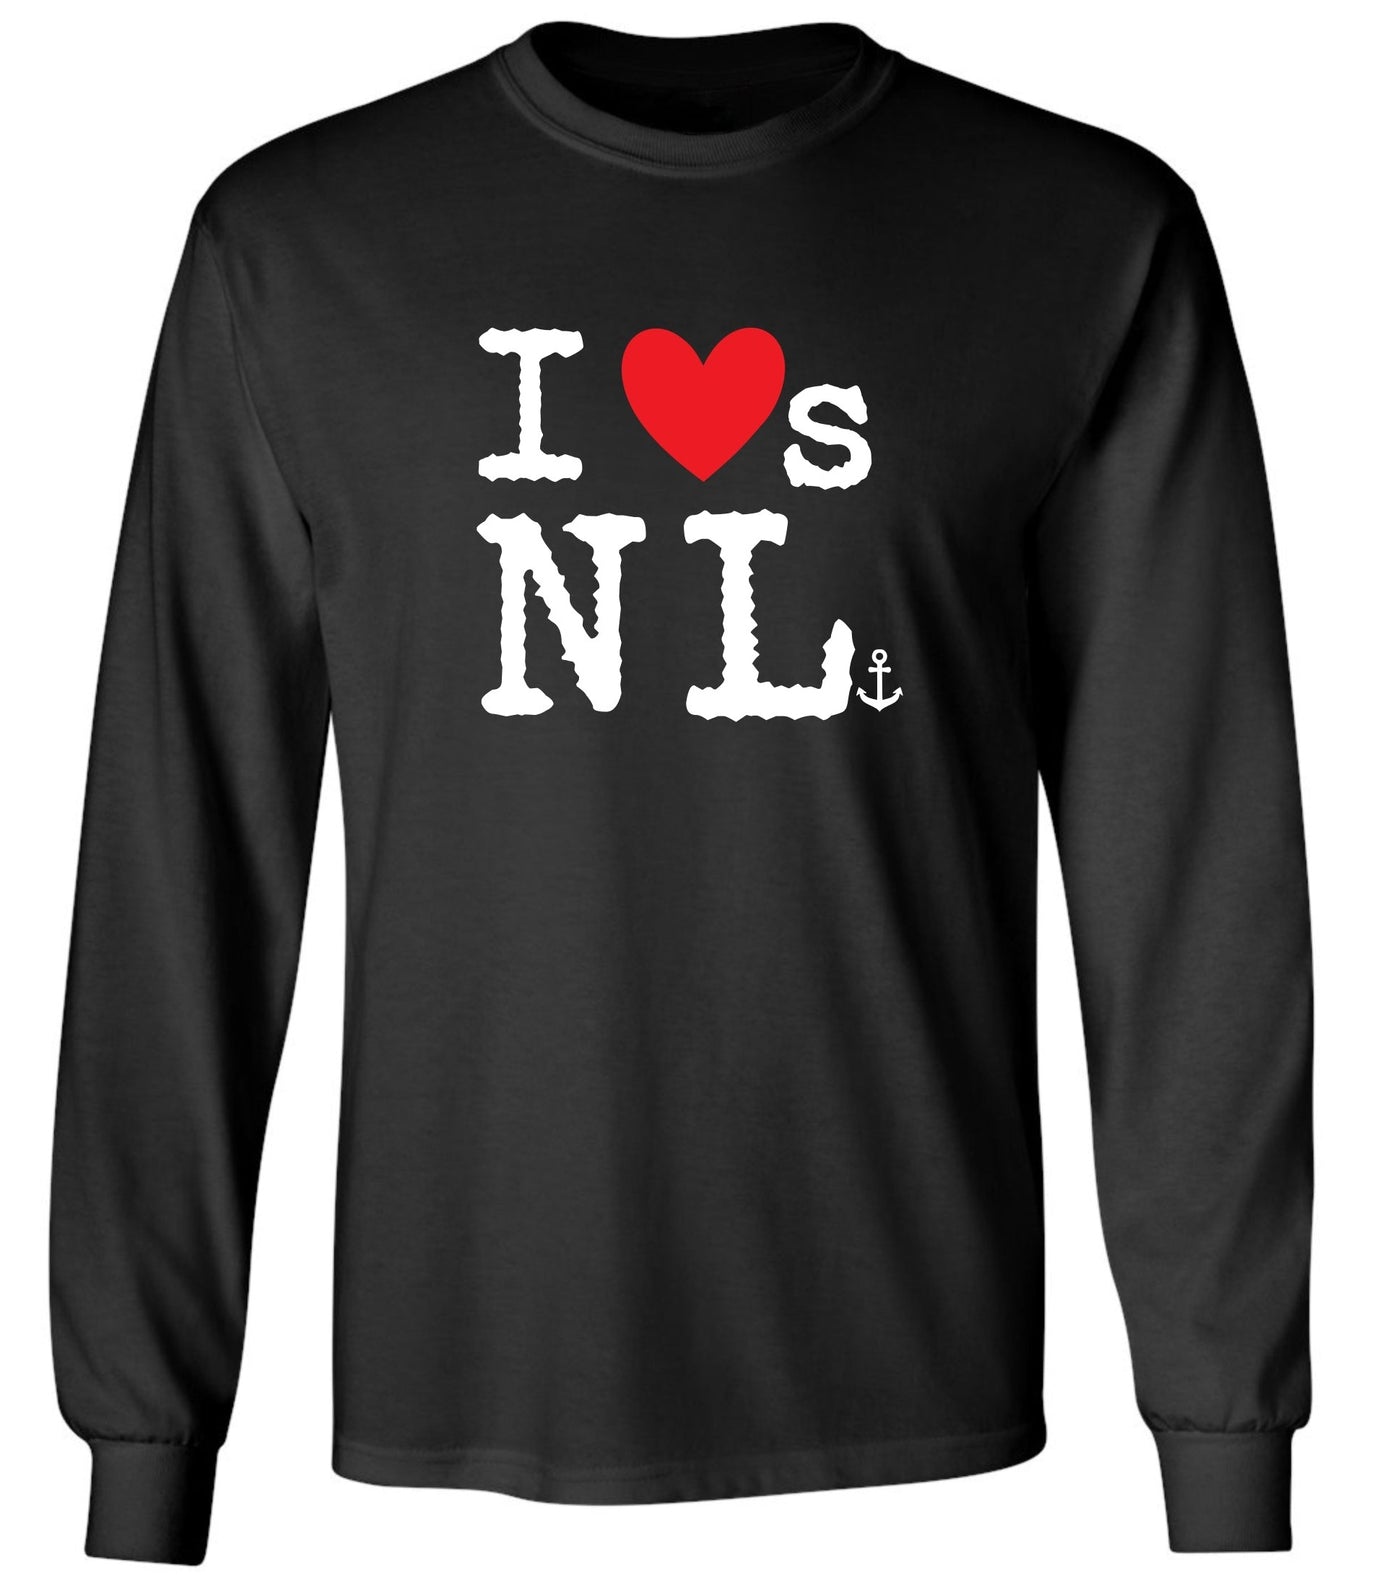 "I Loves NL" Red Heart Unisex Long Sleeve Shirt